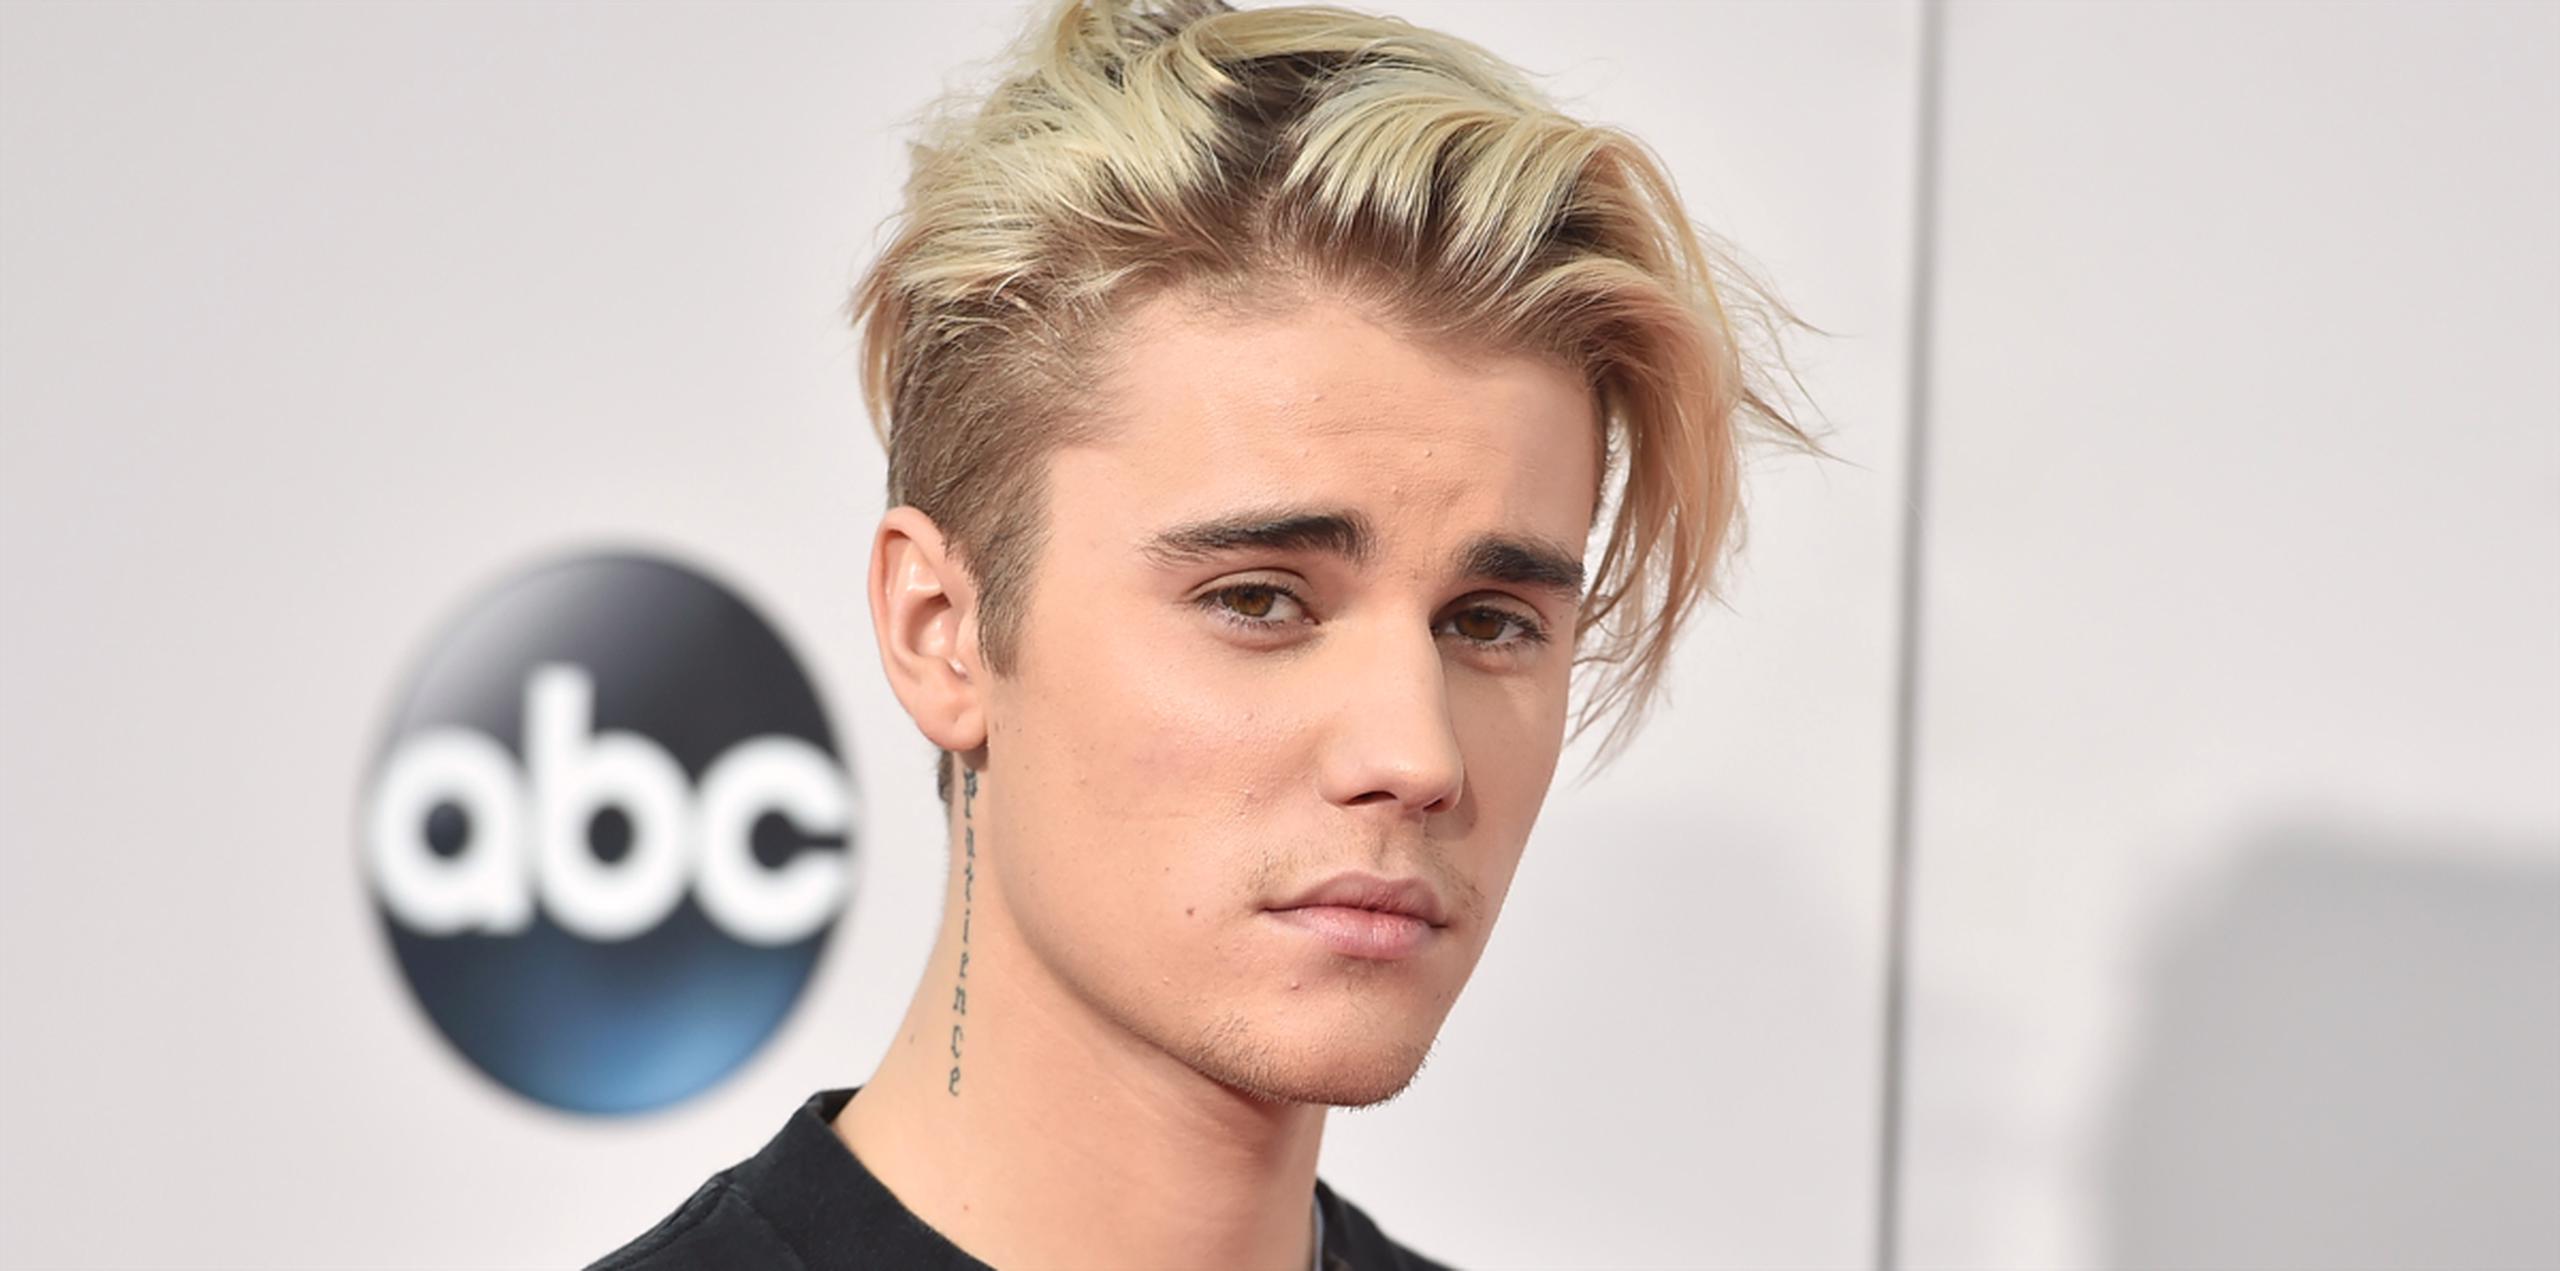 Bieber hizo una gira de conciertos en China en 2013, cuando causó cierta polémica al recorrer la Gran Muralla y hacerse fotos siendo llevado a cuestas por sus guardaespaldas. (AP)